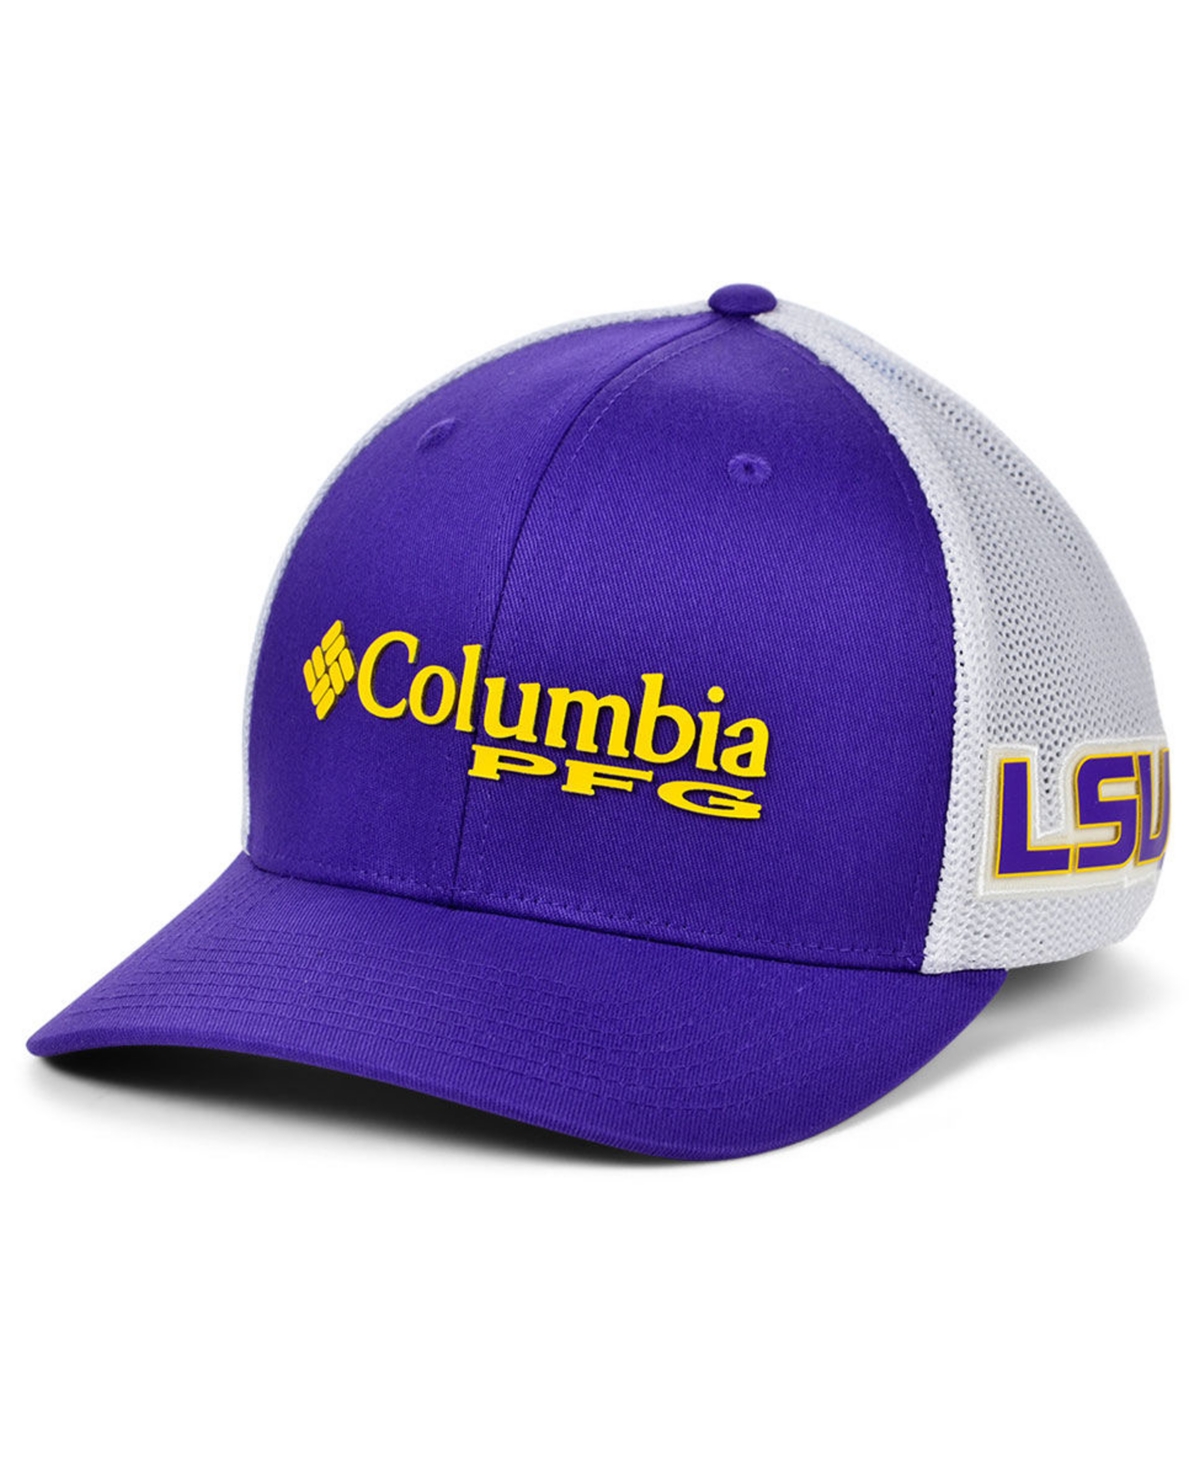 Men's COLUMBIA Hats Sale